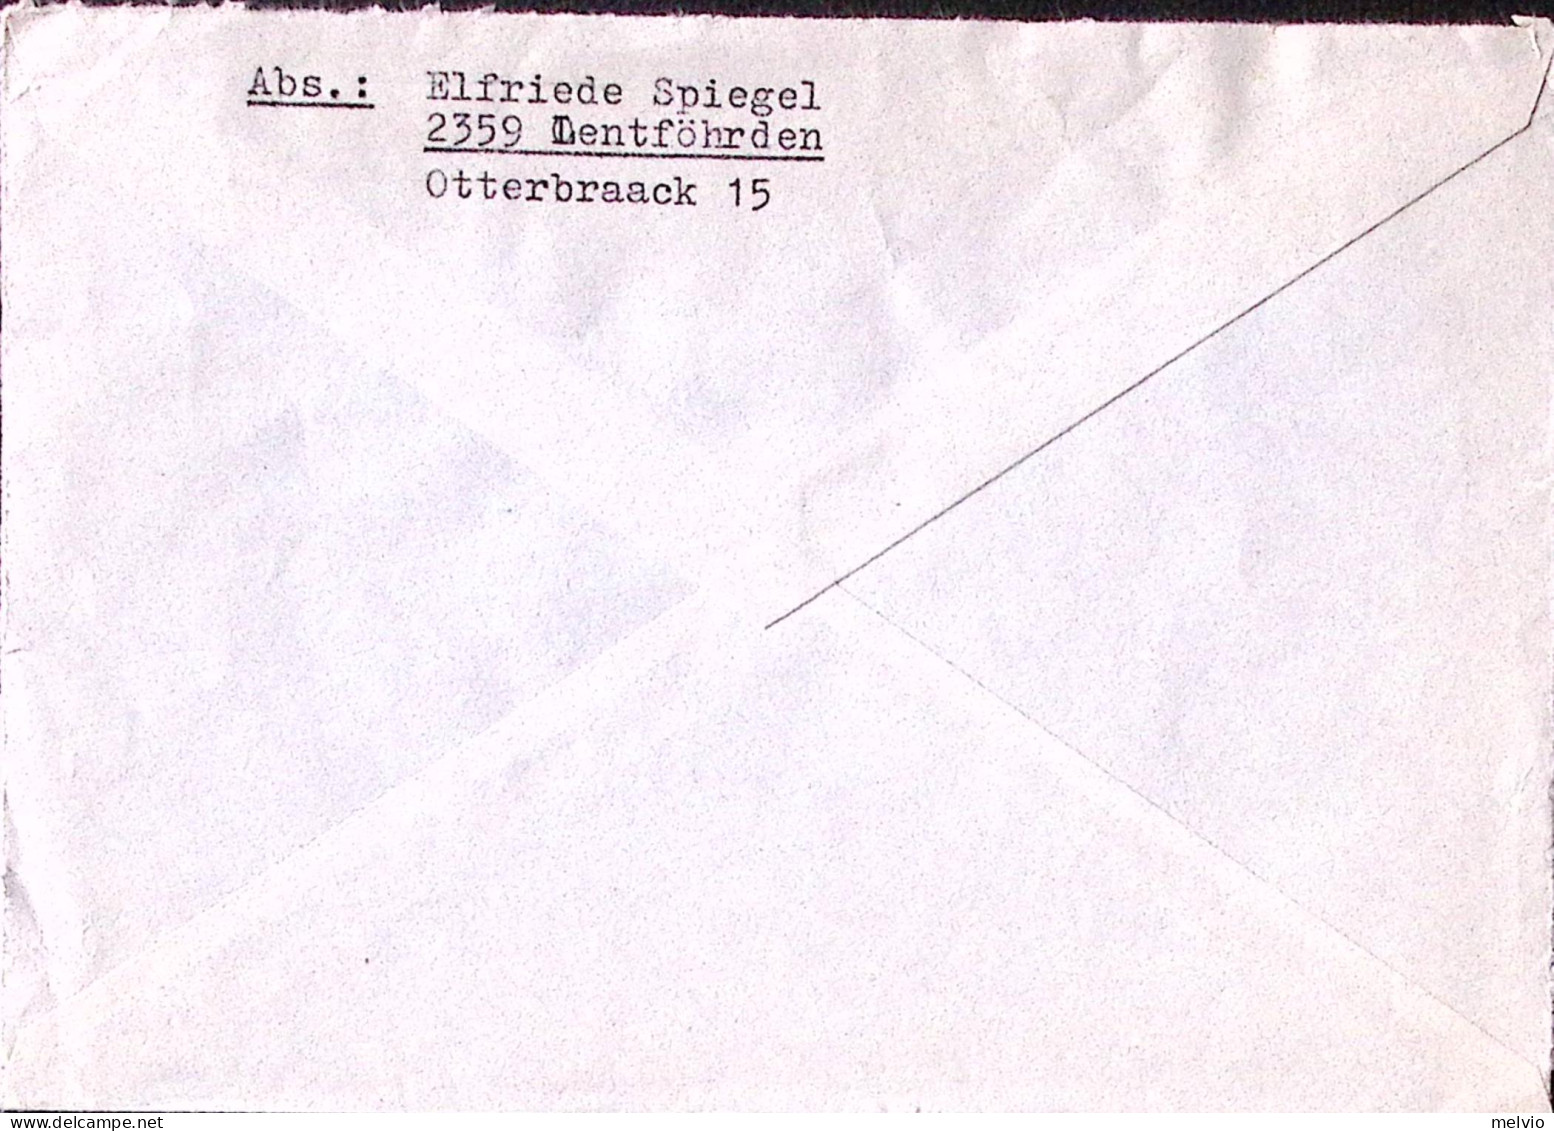 1975-GERMANIA Infortuni P.20 E 30 NON DENT. IN ALTO + Heinemann P. 40 E 50 Su Ra - Covers & Documents